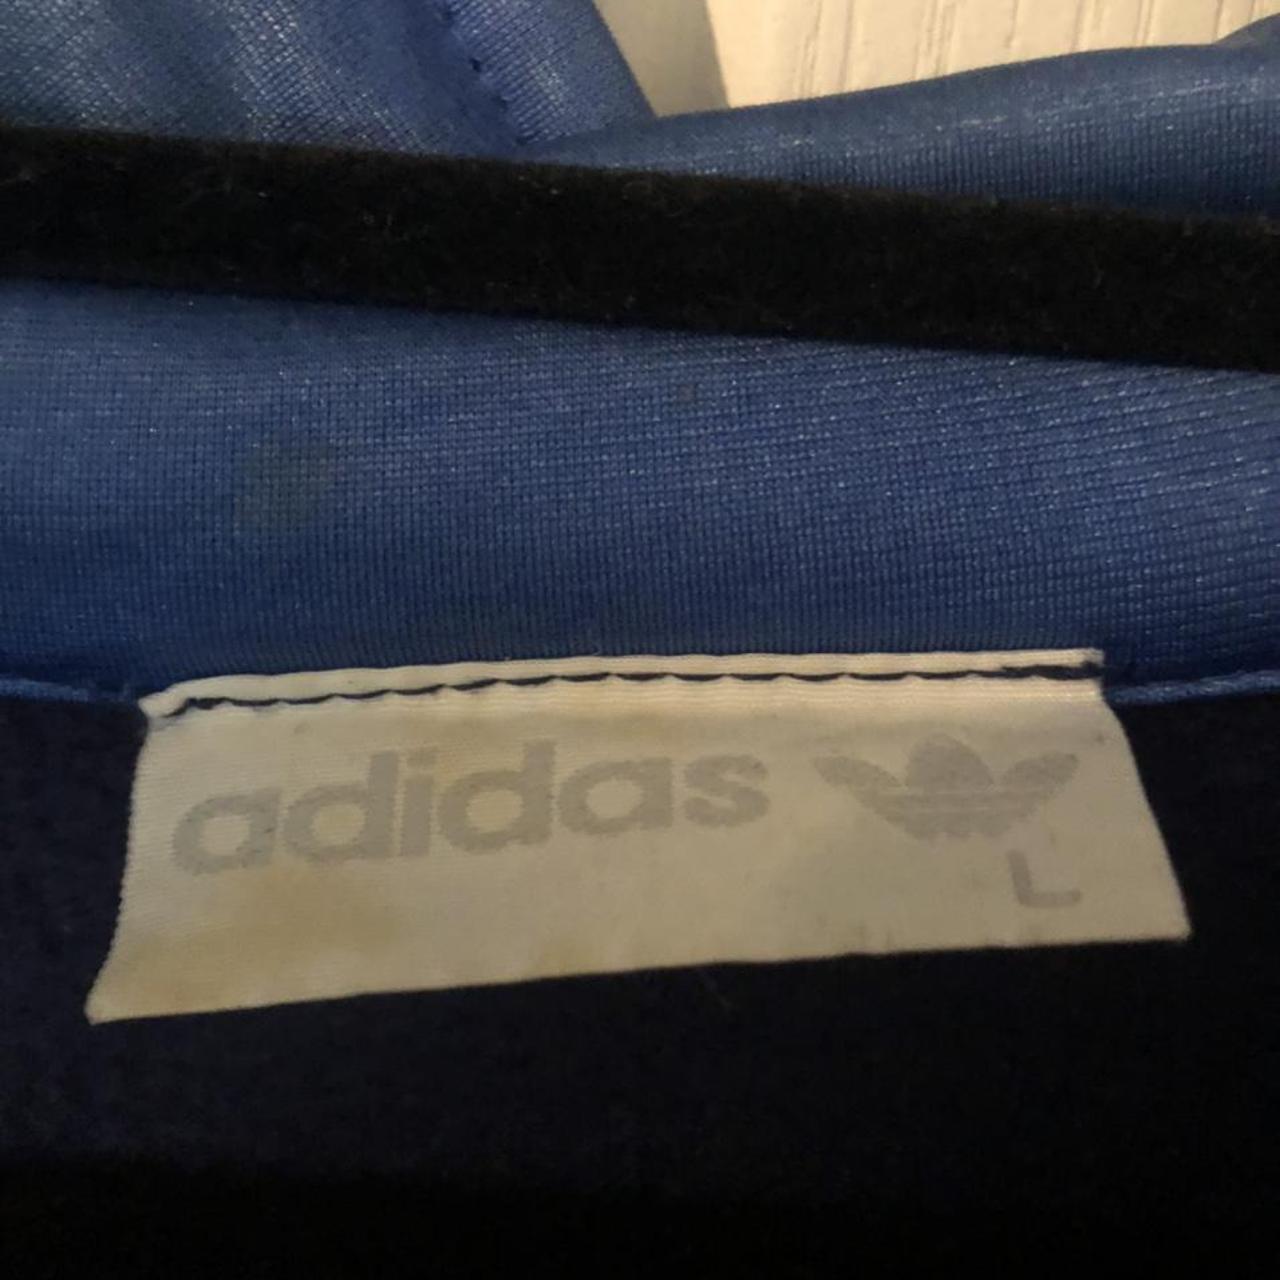 Vintage Adidas originals sports jacket. Worn but in... - Depop